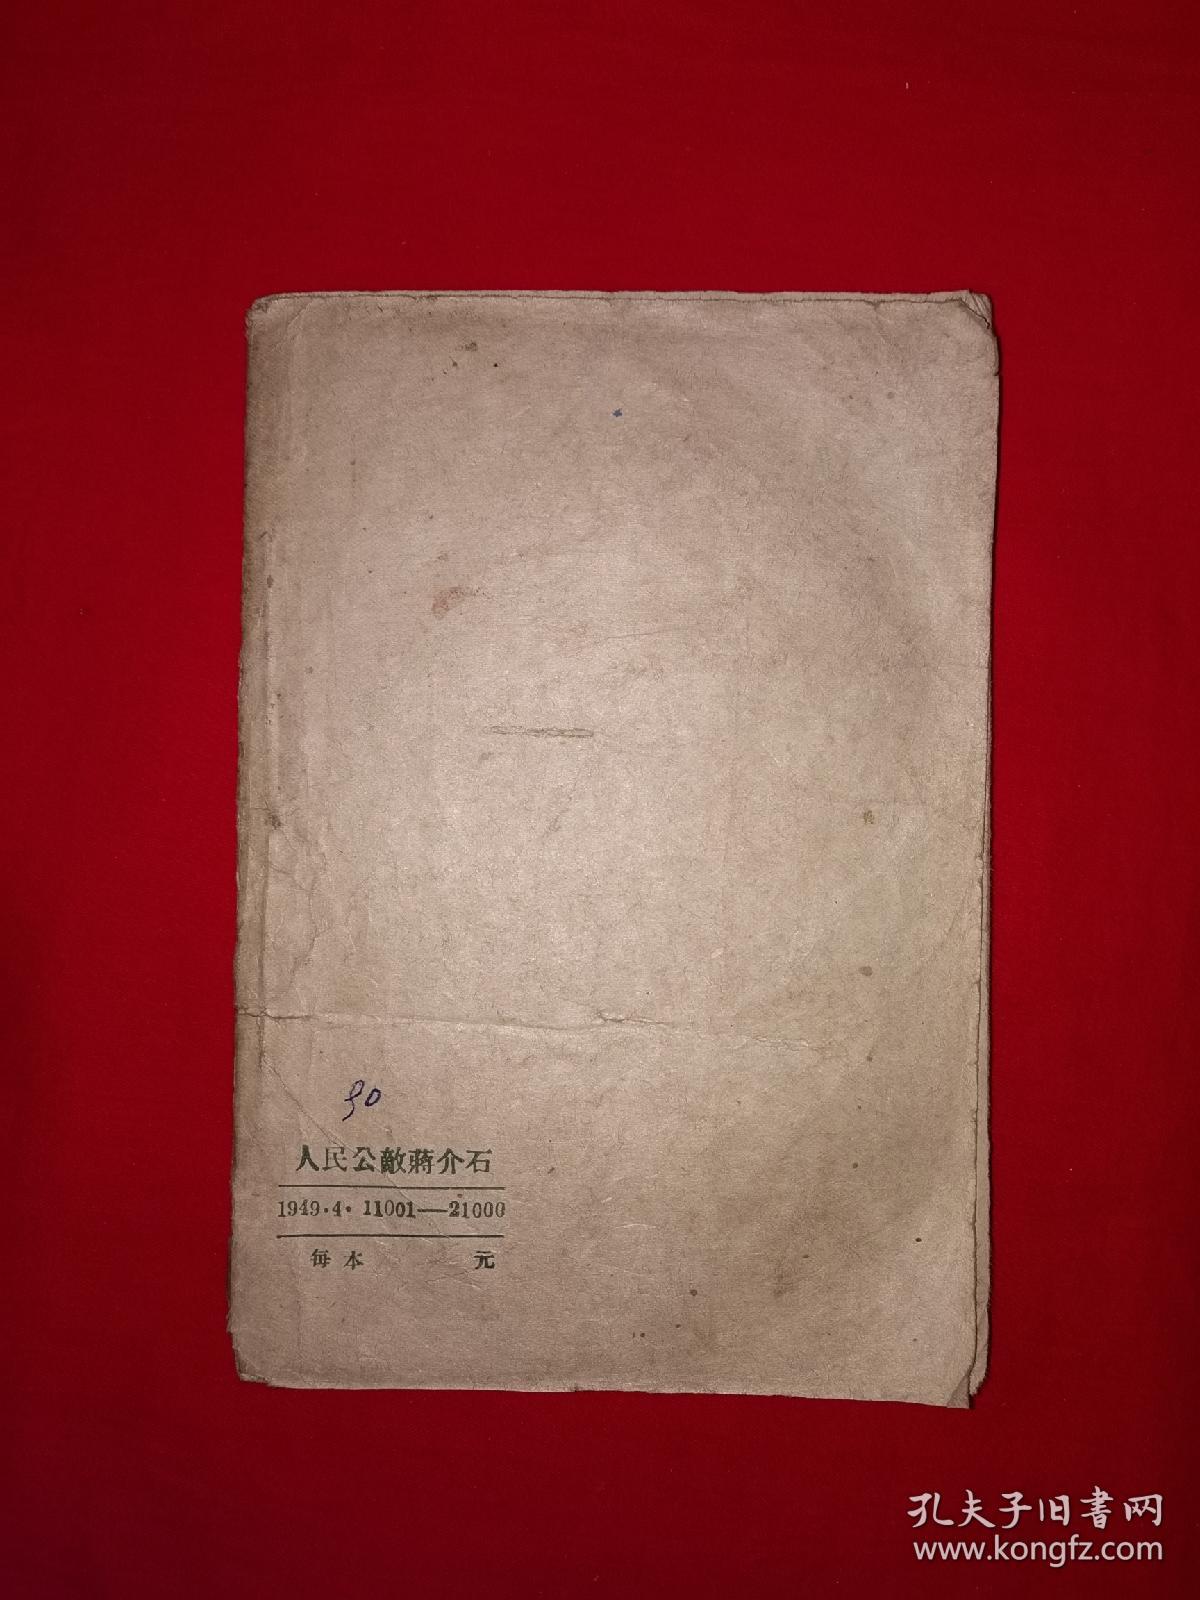 稀见老书丨人民公敌蒋介石（全一册）1949年原版老书非复印件，存世量极少！详见描述和图片